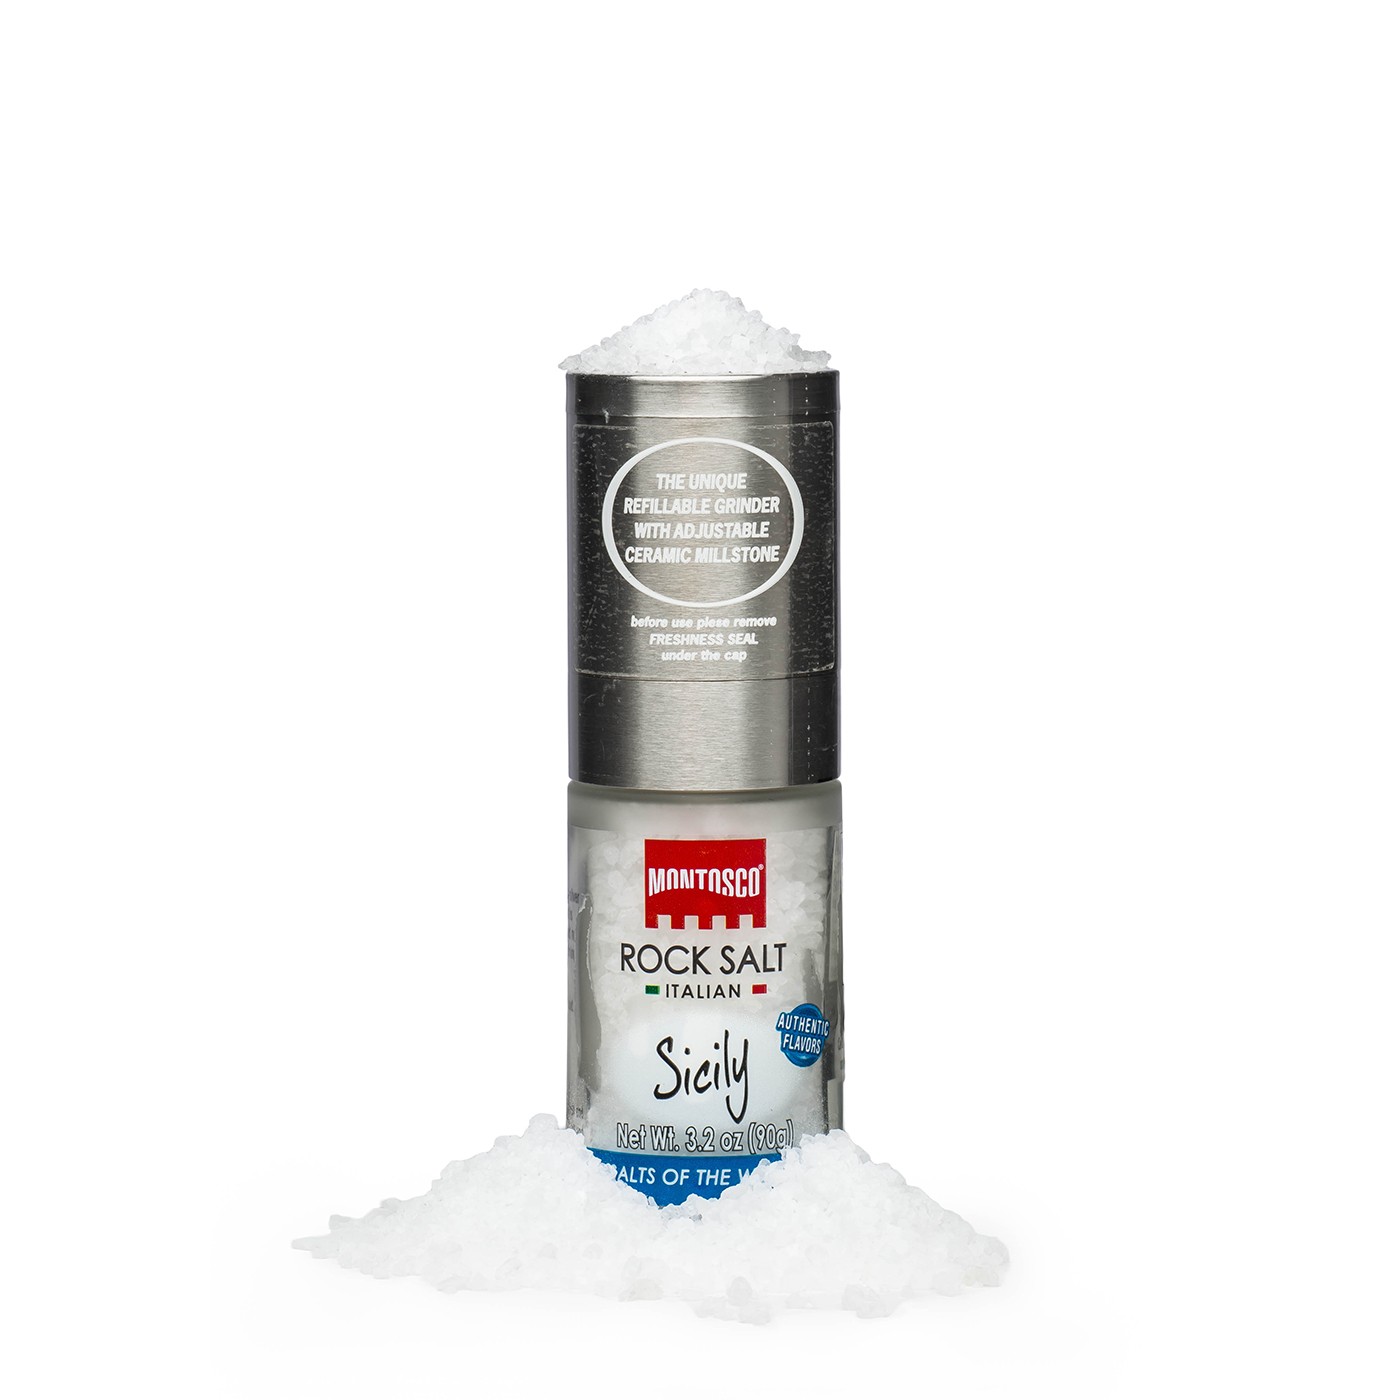 Sicily White Rock Salt Grinder 3.17 oz